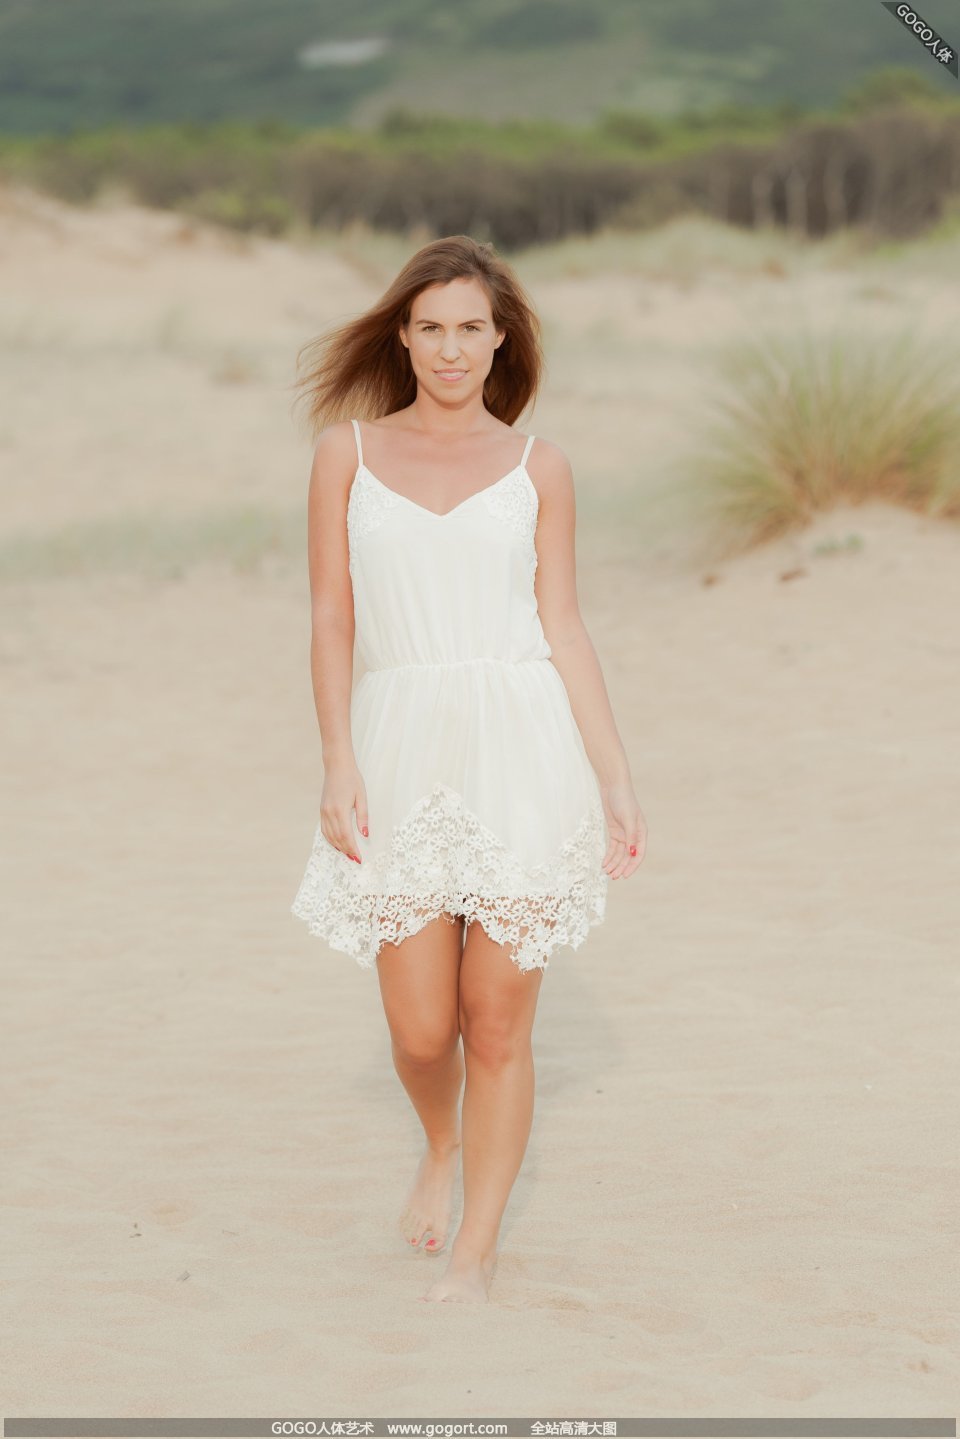 Model JENNYA who breaks holes on the sand dunes 